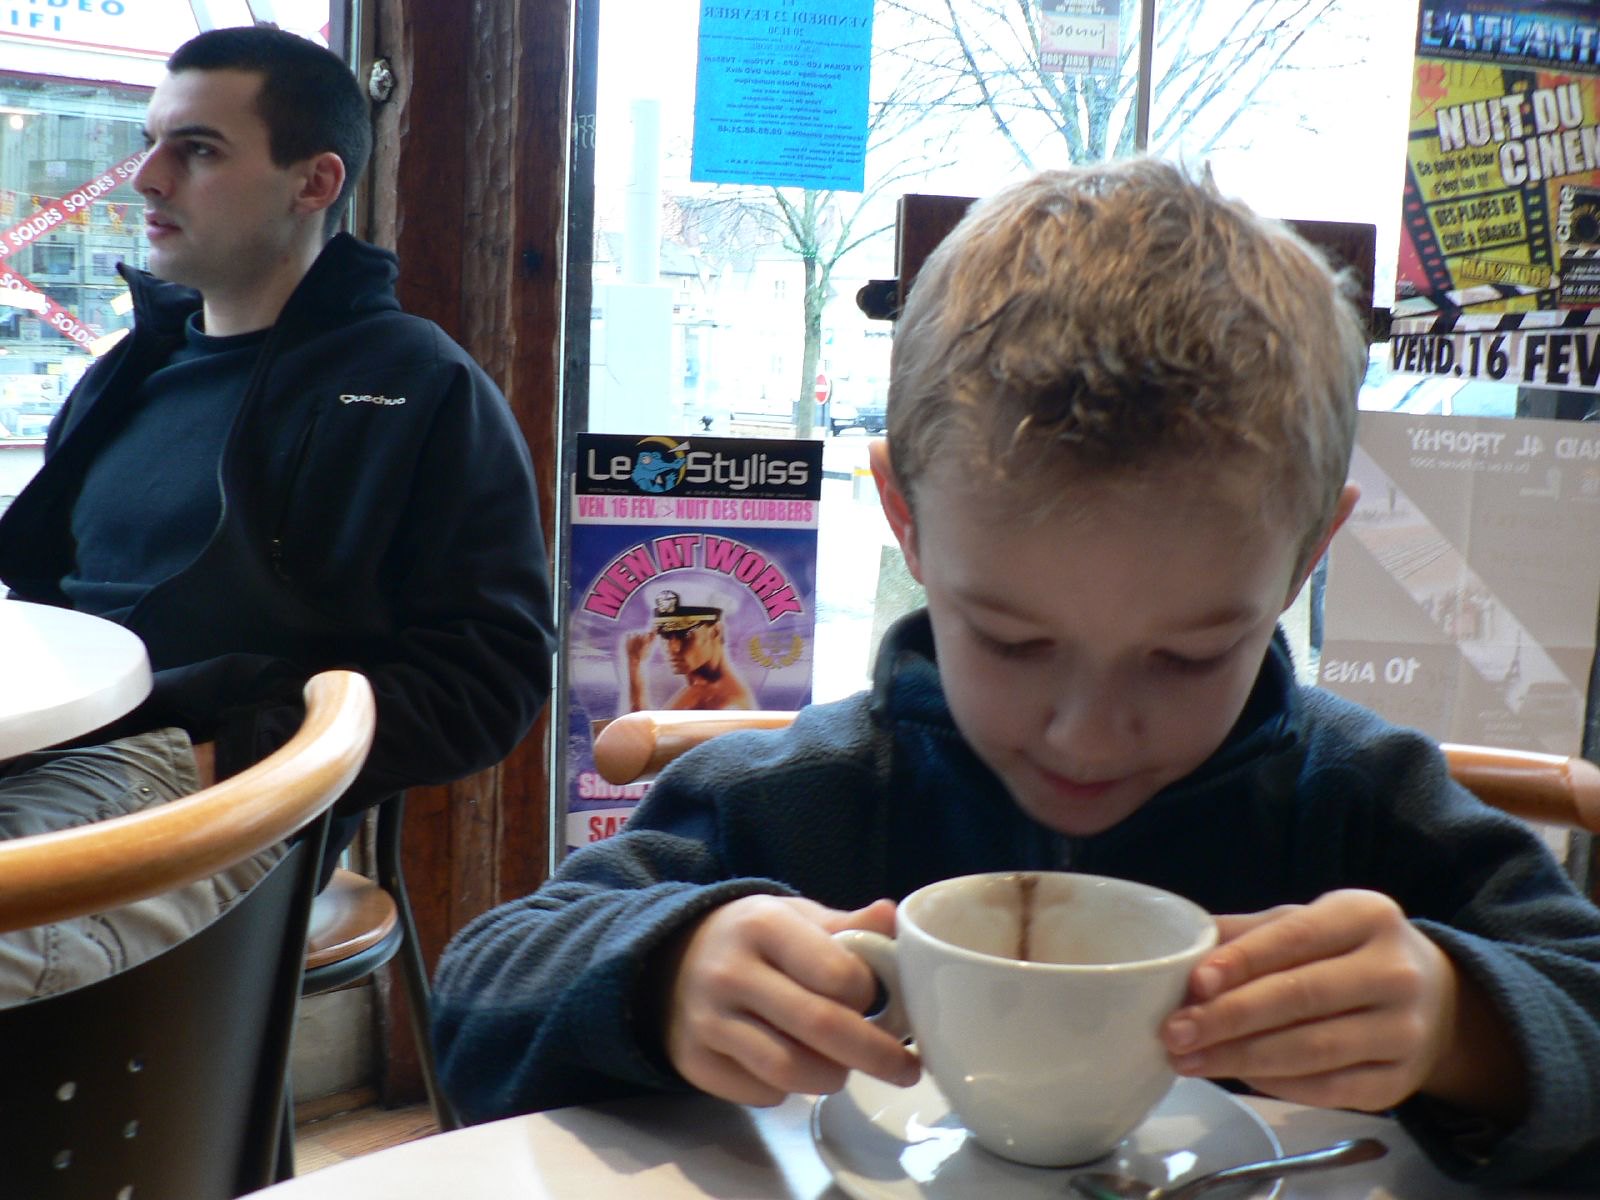 Ein kleiner Junge beim Kaffee trinken in einem Restaurant | Quelle: Flickr